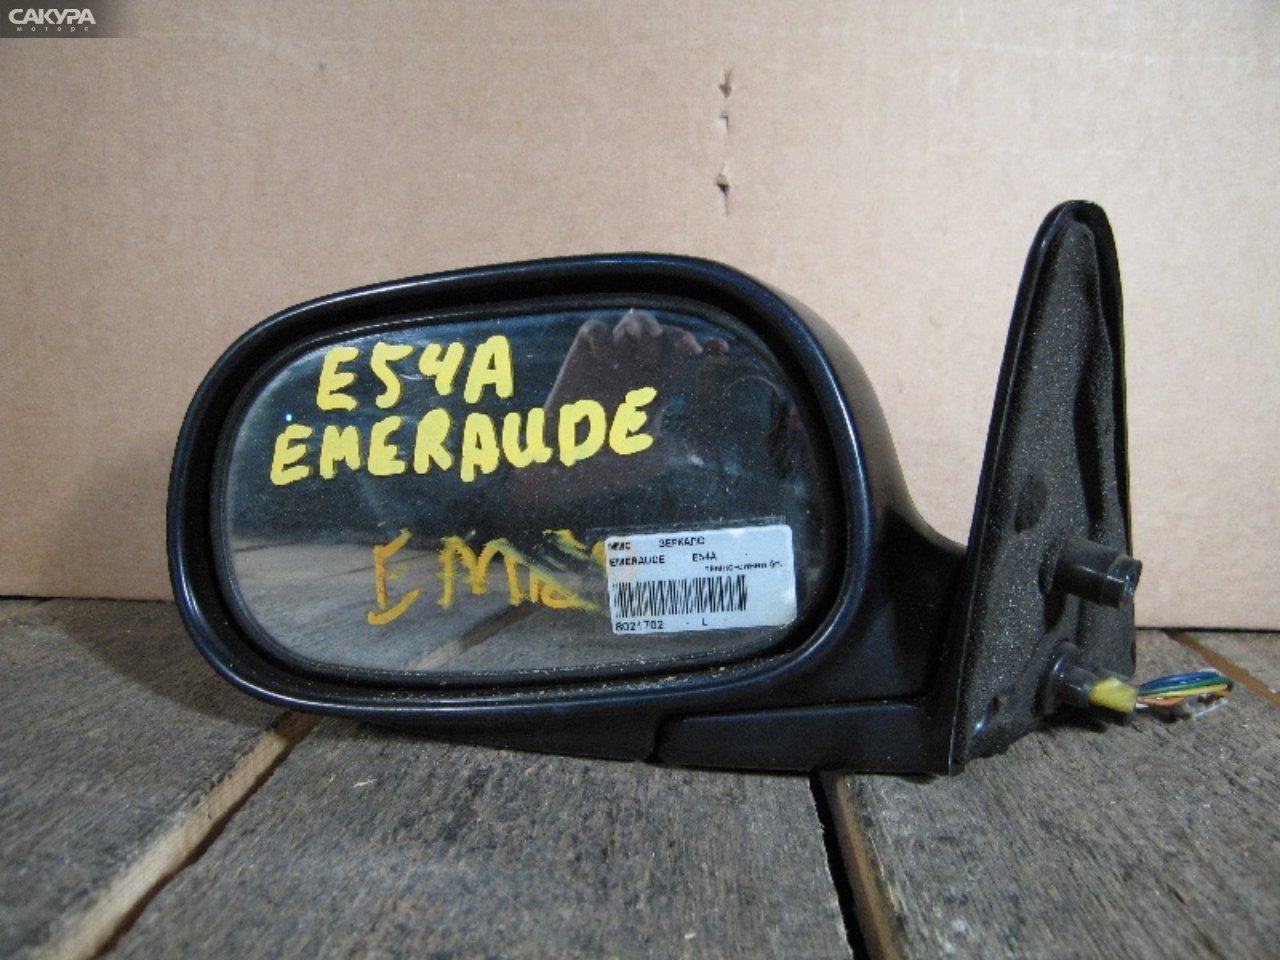 Зеркало боковое левое Mitsubishi Emeraude E54A: купить в Сакура Абакан.